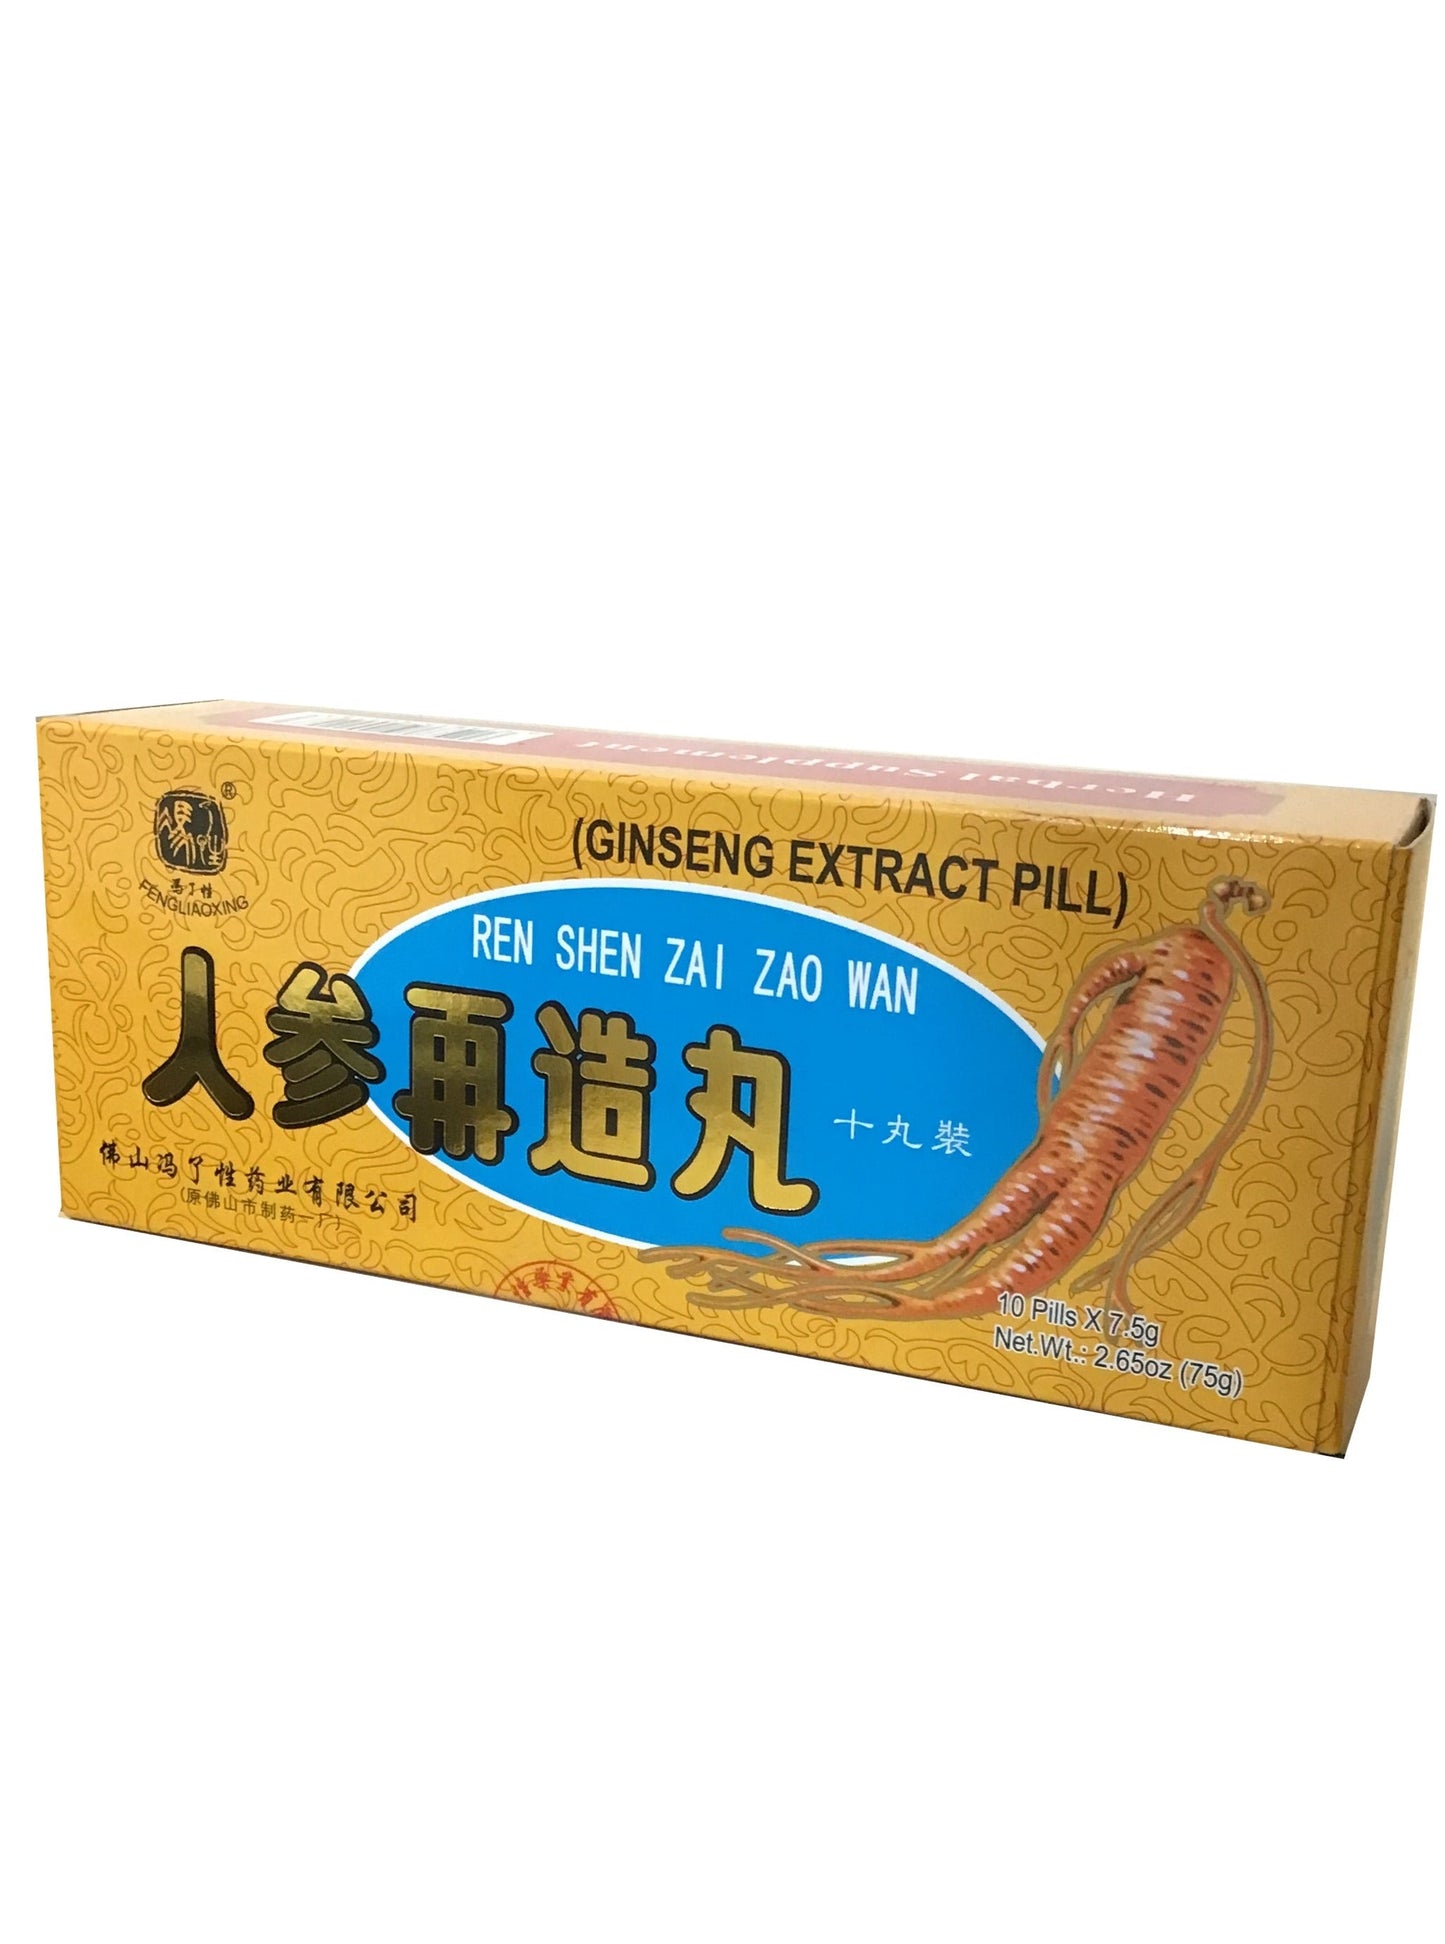 Ginseng Extract Pill (Ren Shen Zai Zao Wan) 10 Pills 冯了性牌 人参再造丸